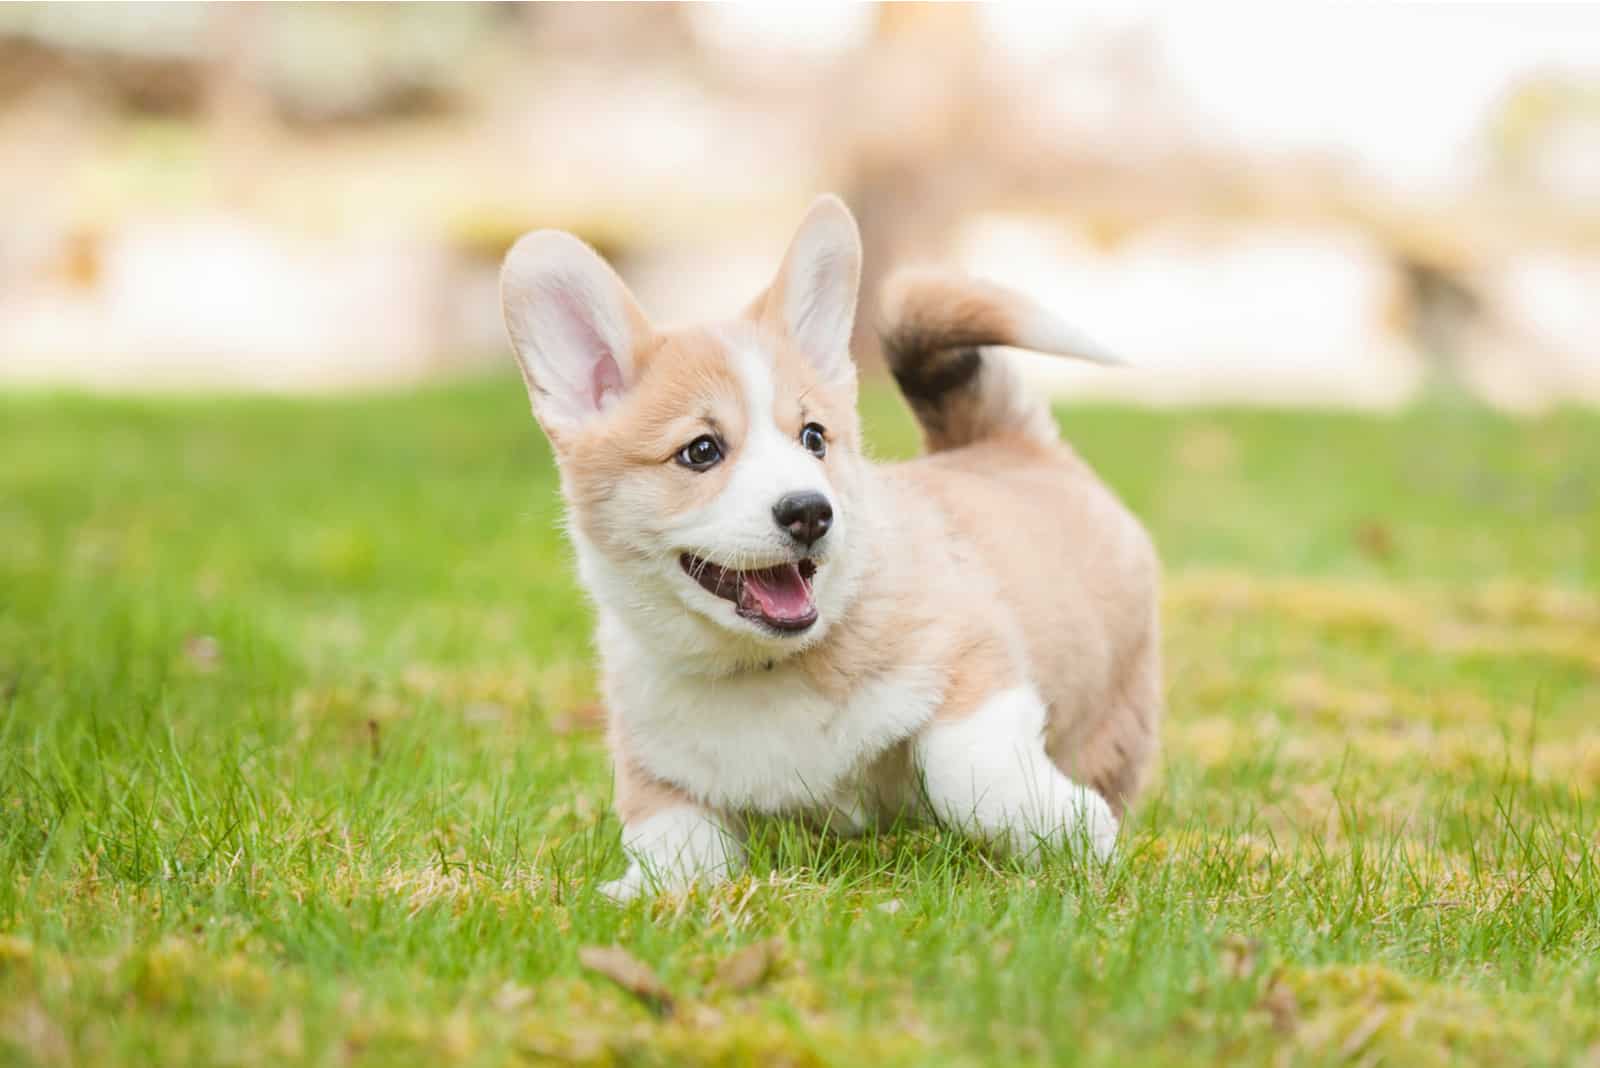 a corgi puppy runs across the grass